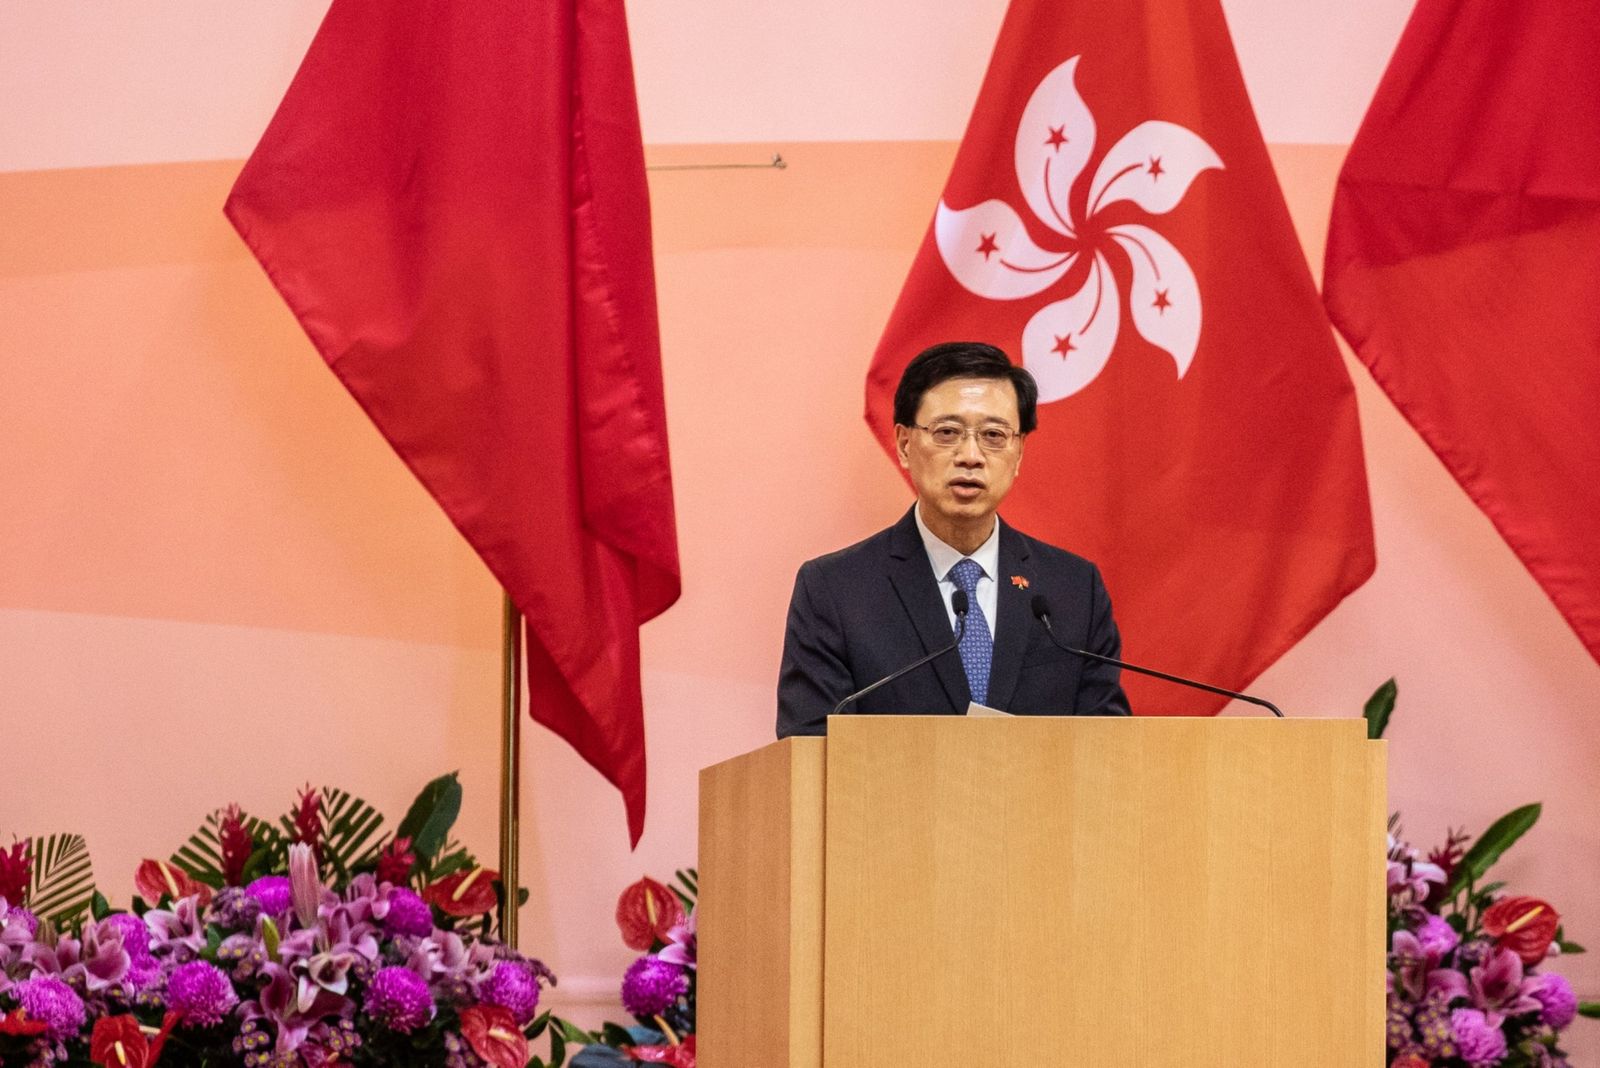 الرئيس التنفيذي بالوكالة لهونج كونج جون لي يتحدث خلال الذكرى الـ24 لعودة الإقليم إلى الحكم الصيني - 1 يوليو 2021 - Bloomberg